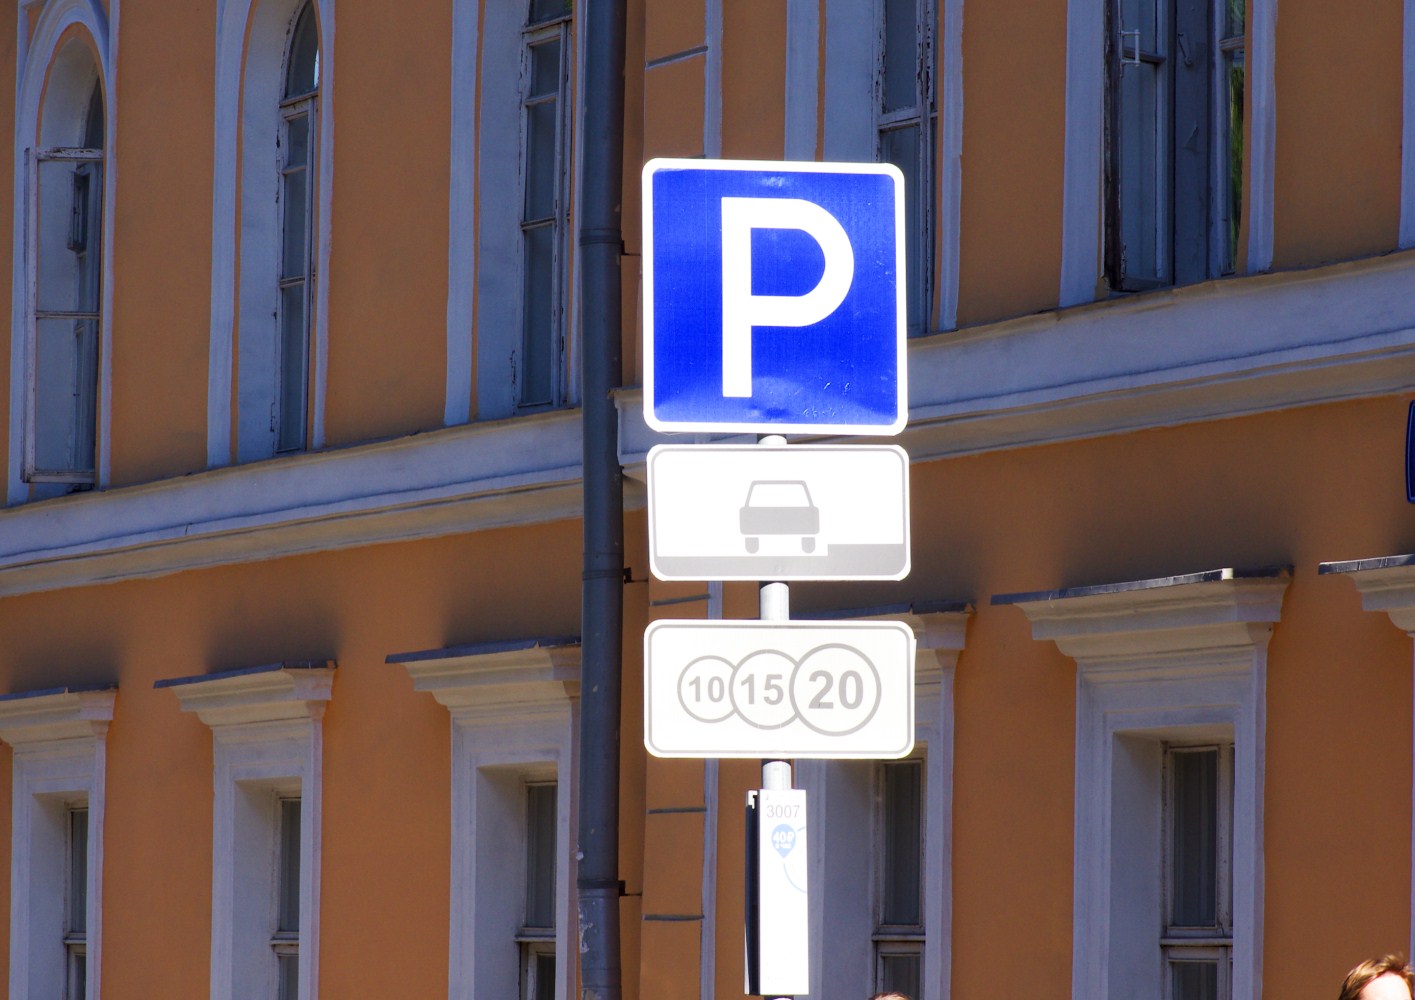 Уличная парковка в Москве будет бесплатной с 23 по 25 февраля